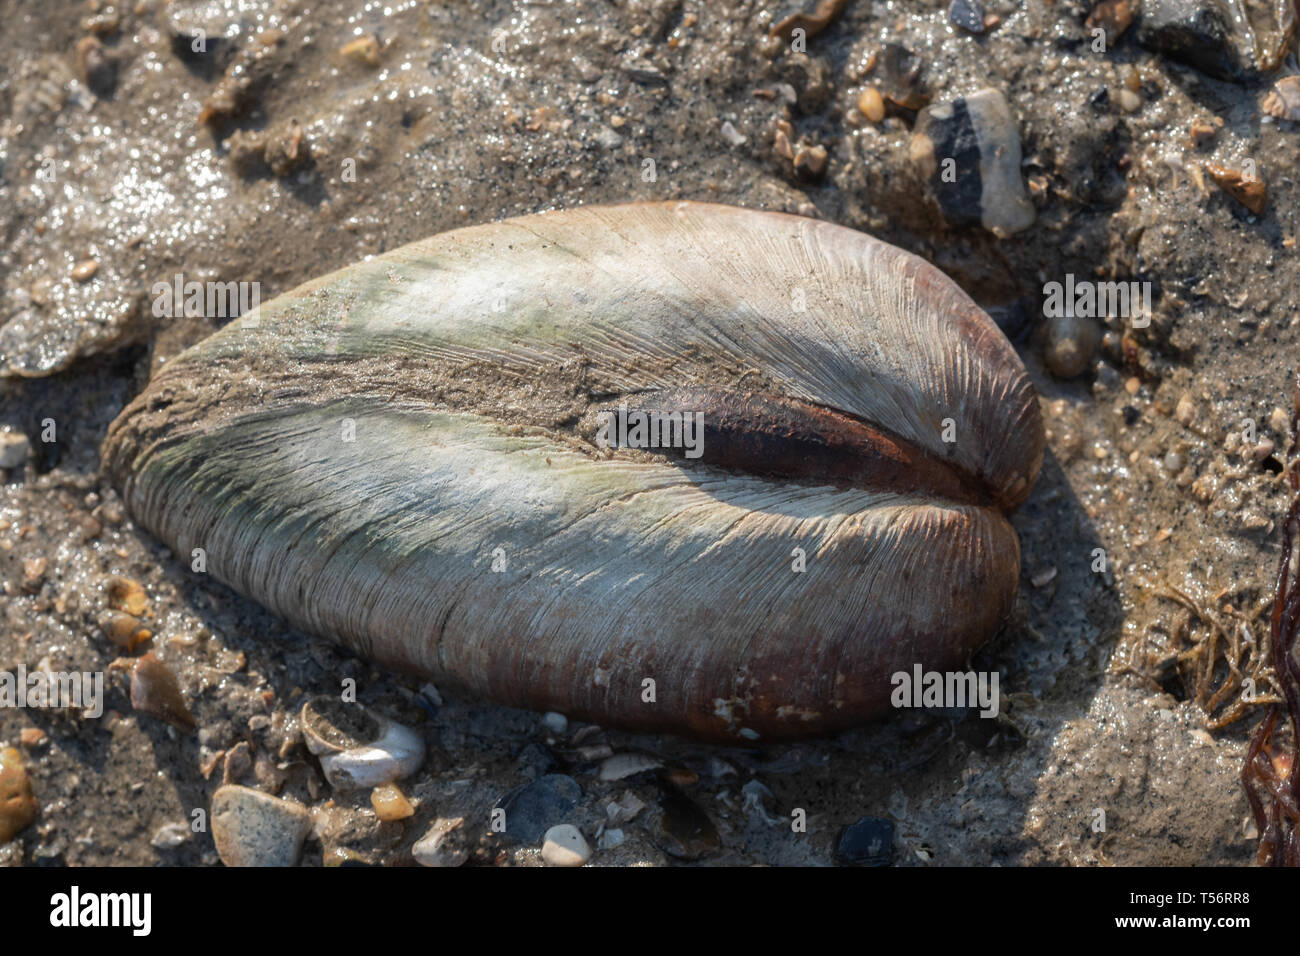 La almeja, un molusco bivalvo de especies de la fauna marina, sobre una playa DEL REINO UNIDO Foto de stock